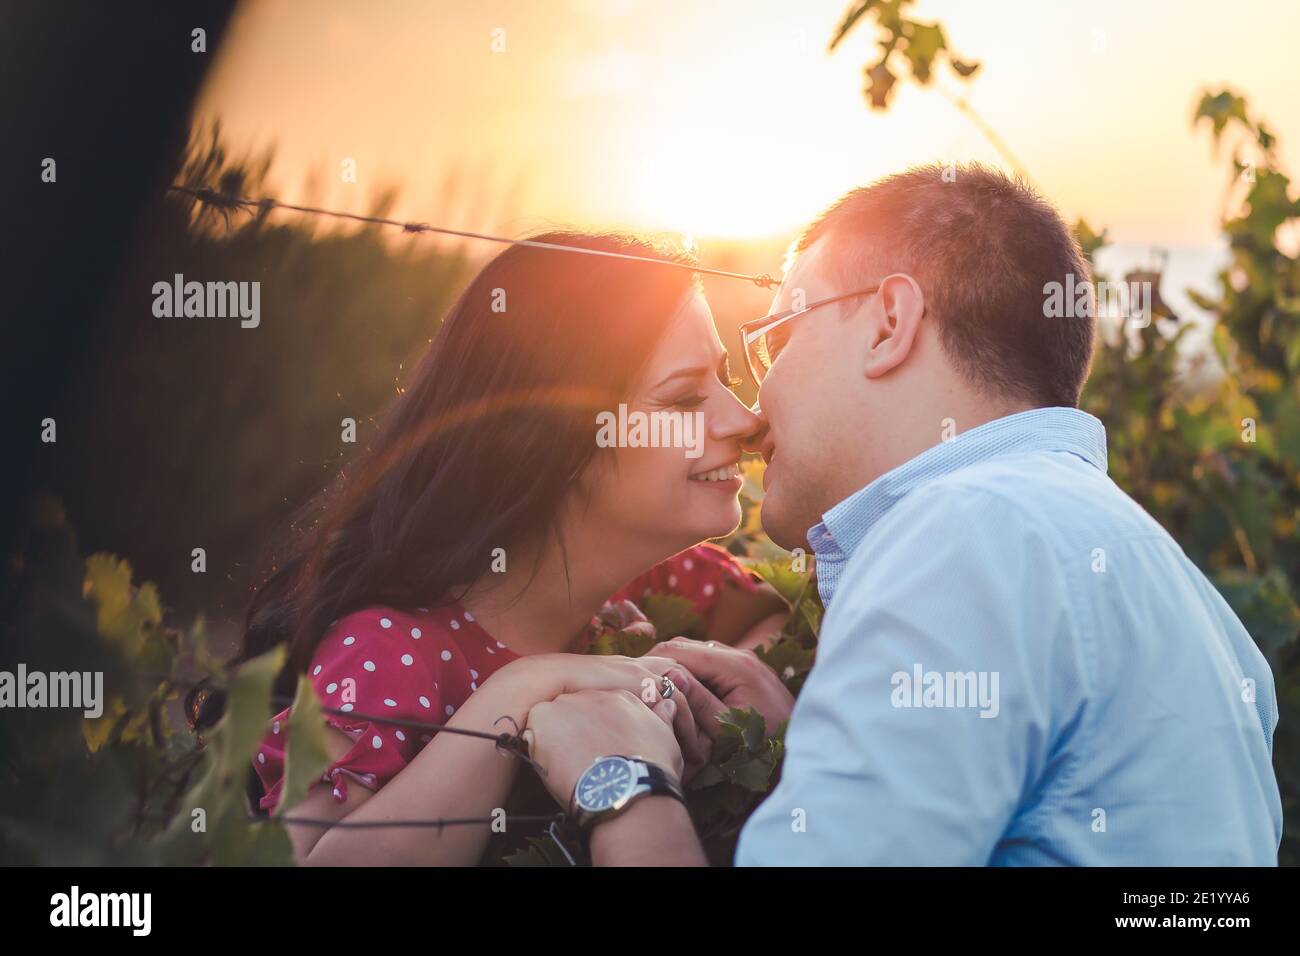 Ritratto esterno di una giovane coppia baciante. Romanticismo, gesti romantici. Luce pomeridiana Foto Stock